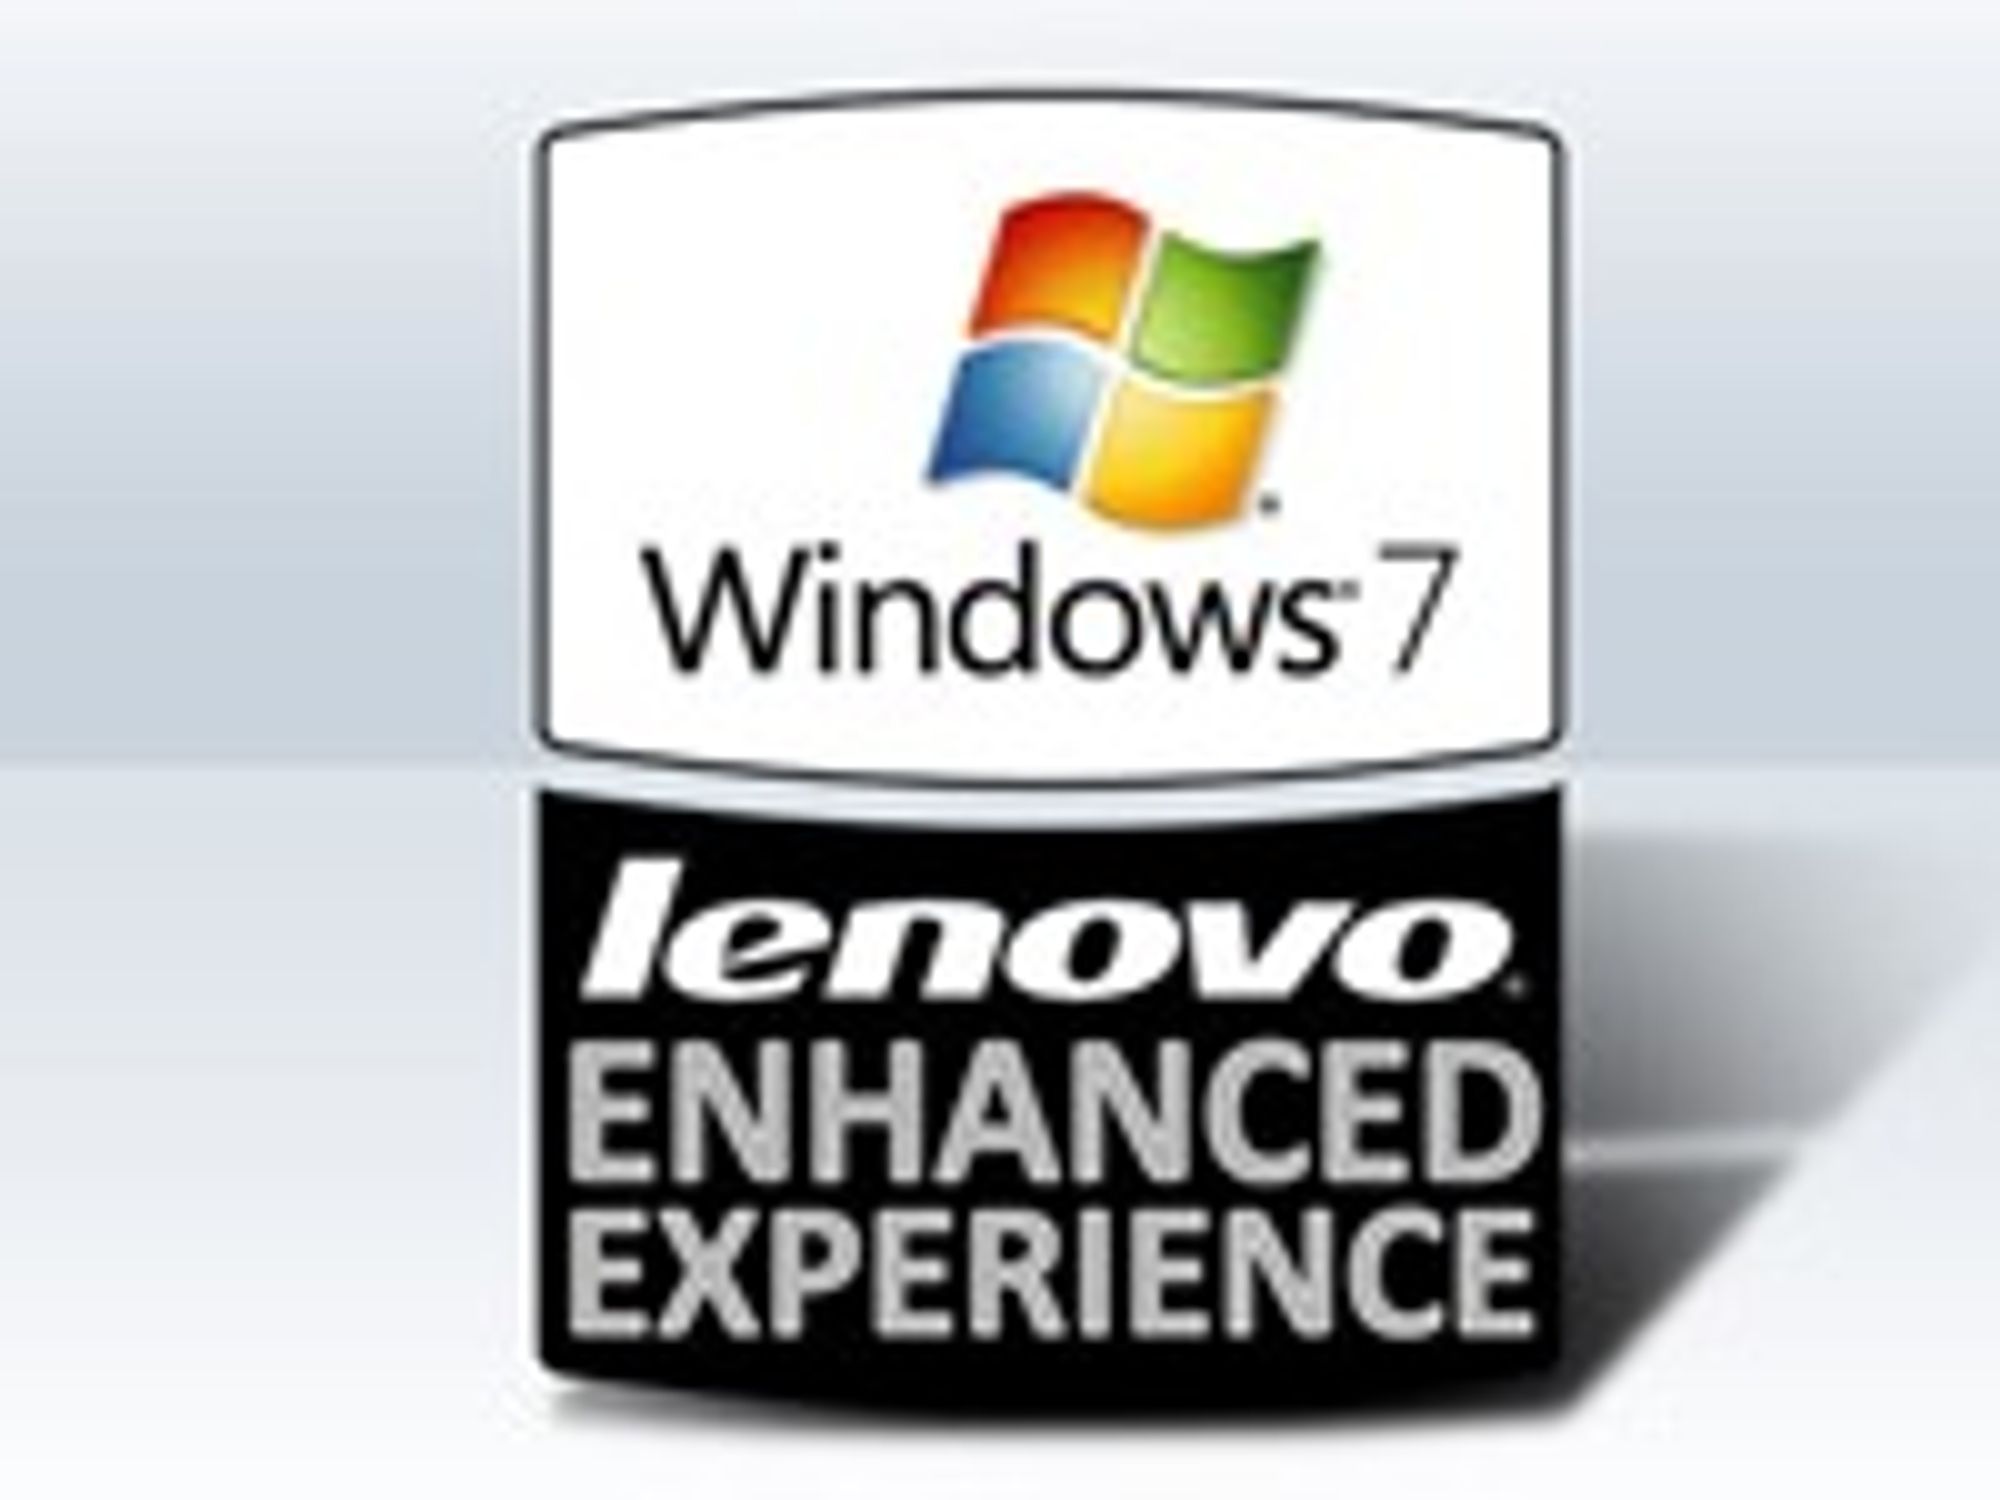 Denne logoen skal vise at pc-en er optimalisert for å kjøre Windows 7 raskere enn andre ellers identisk konfigurerte maskiner.